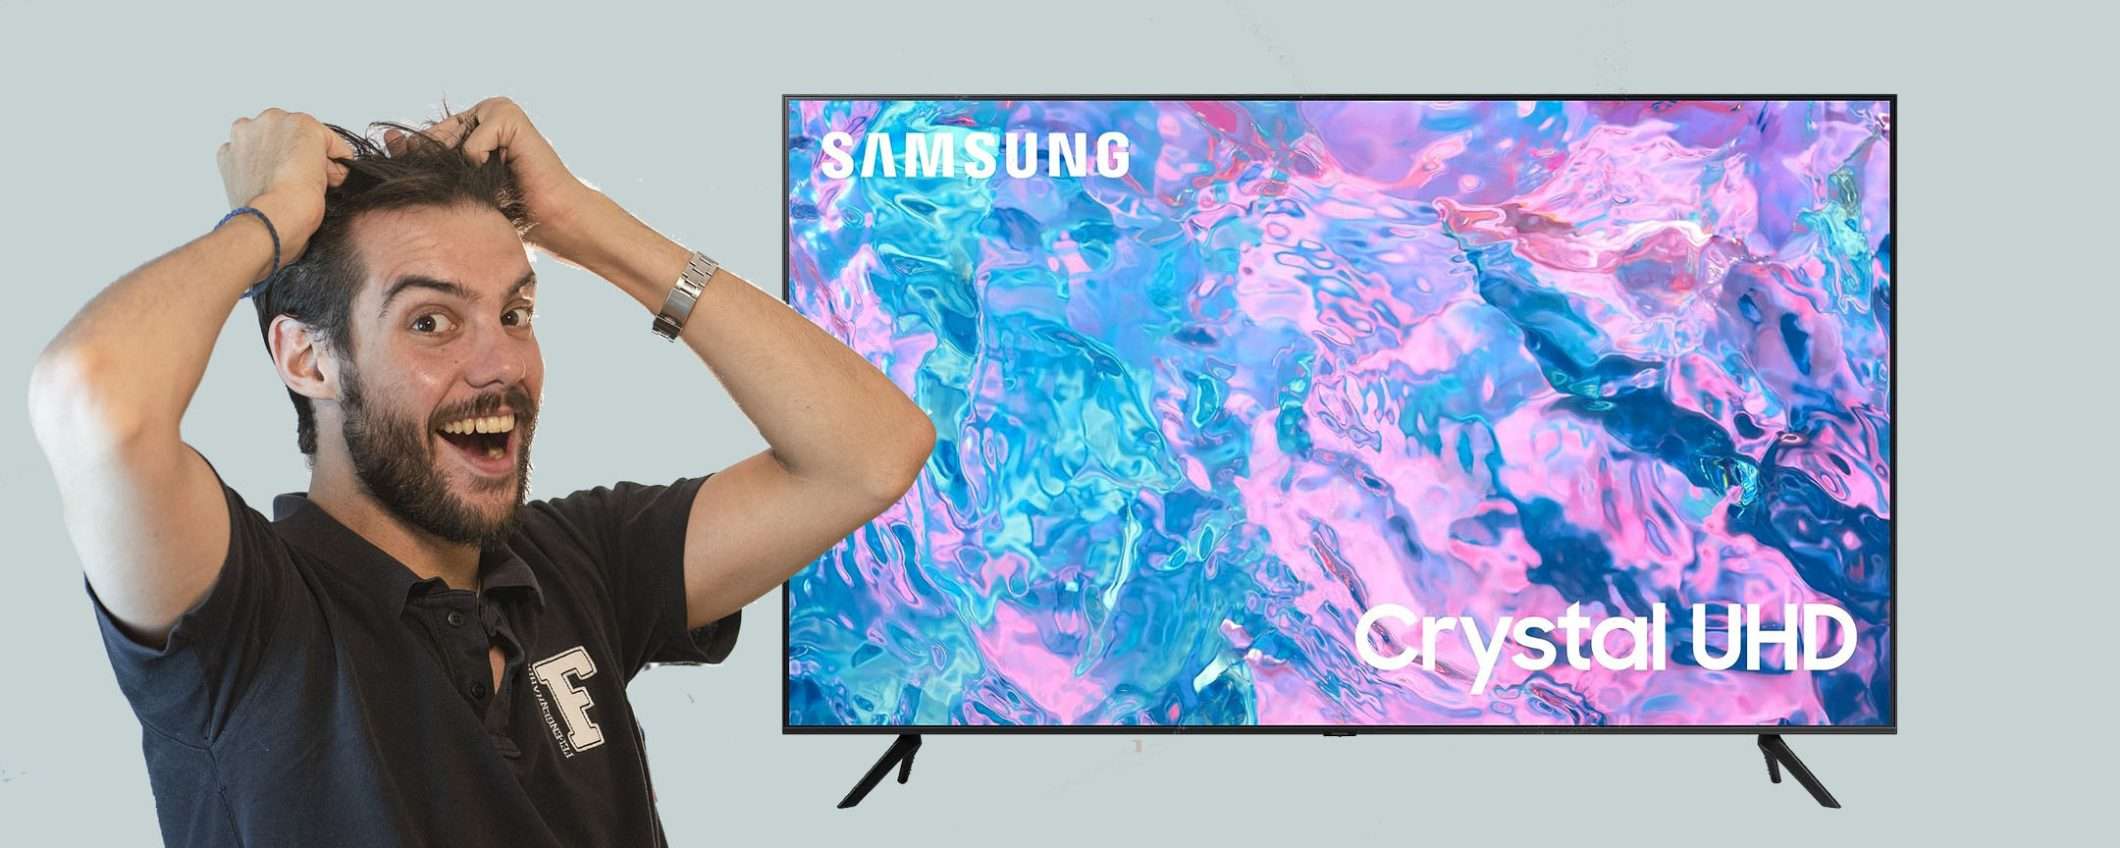 Smart TV Crystal UHD 4K Samsung da 43